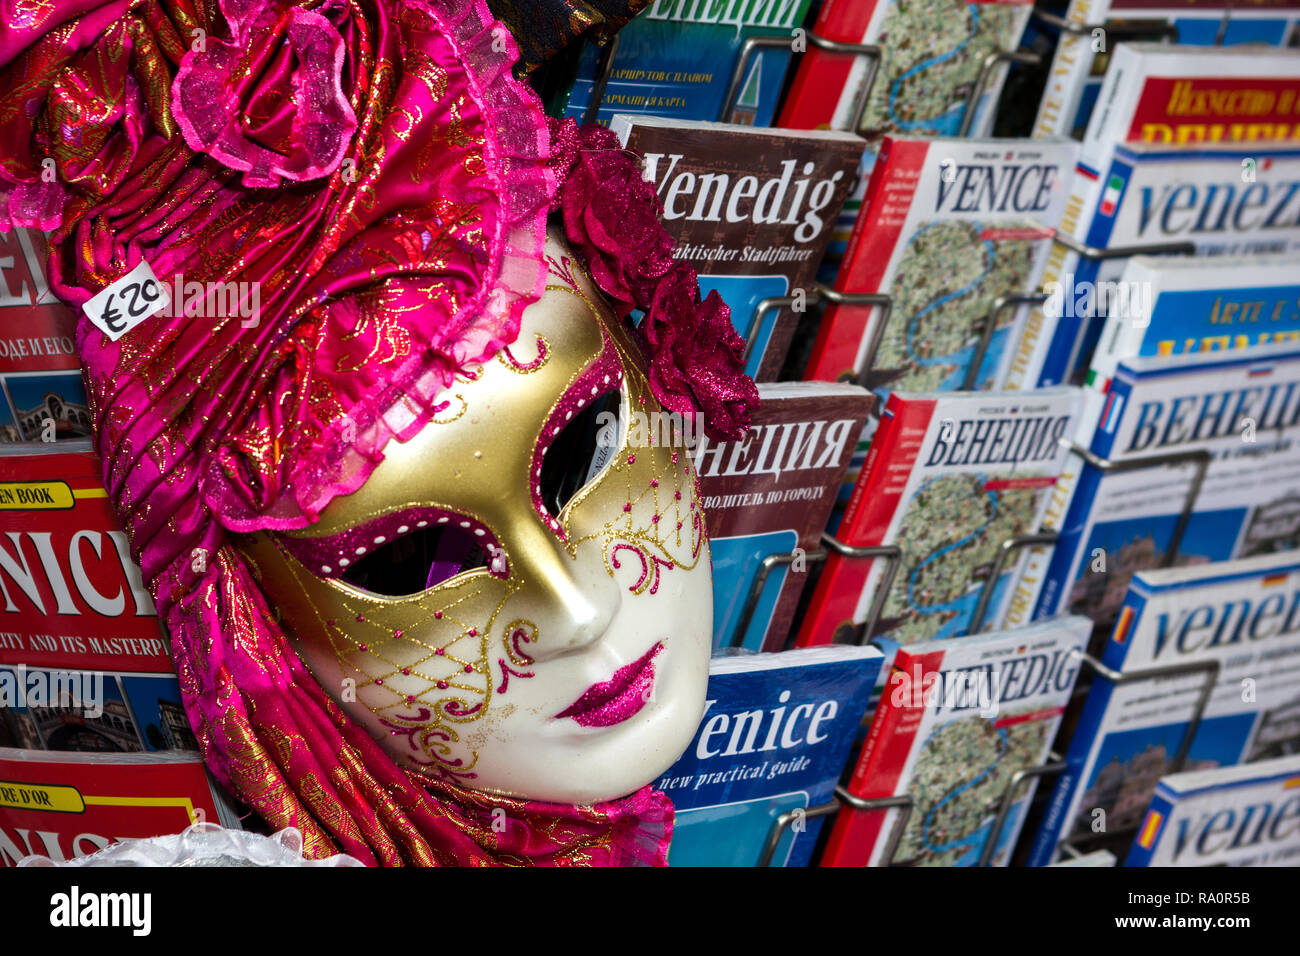 Masque vénitien et multilingue de guides touristiques. Venise Italie Banque D'Images